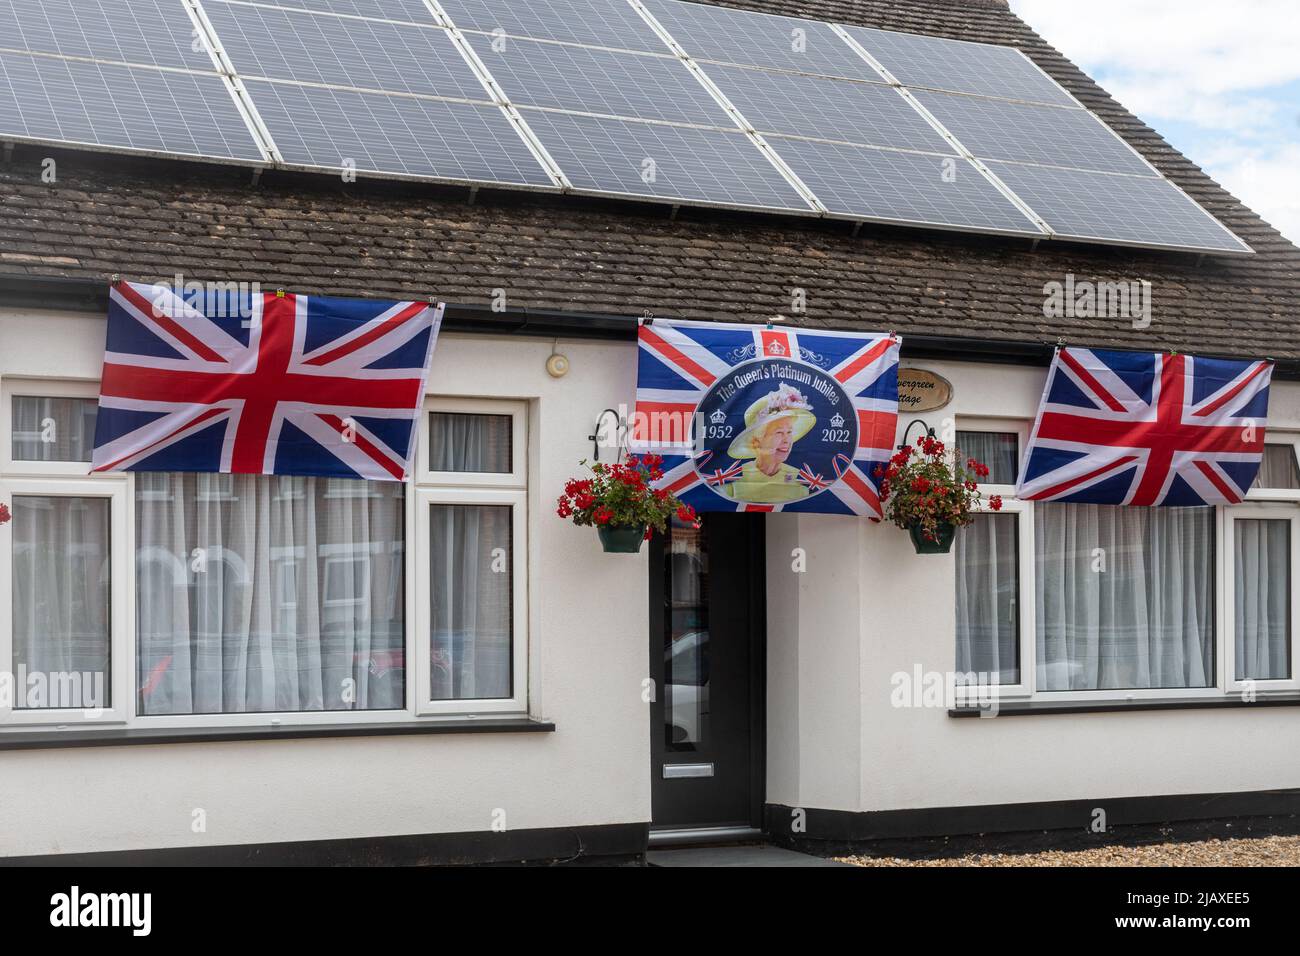 Jubileo de platino decoraciones banderas en una casa de bungalows propiedad para celebrar la Reina Isabel II 70 años en el trono, 2022 de junio Foto de stock